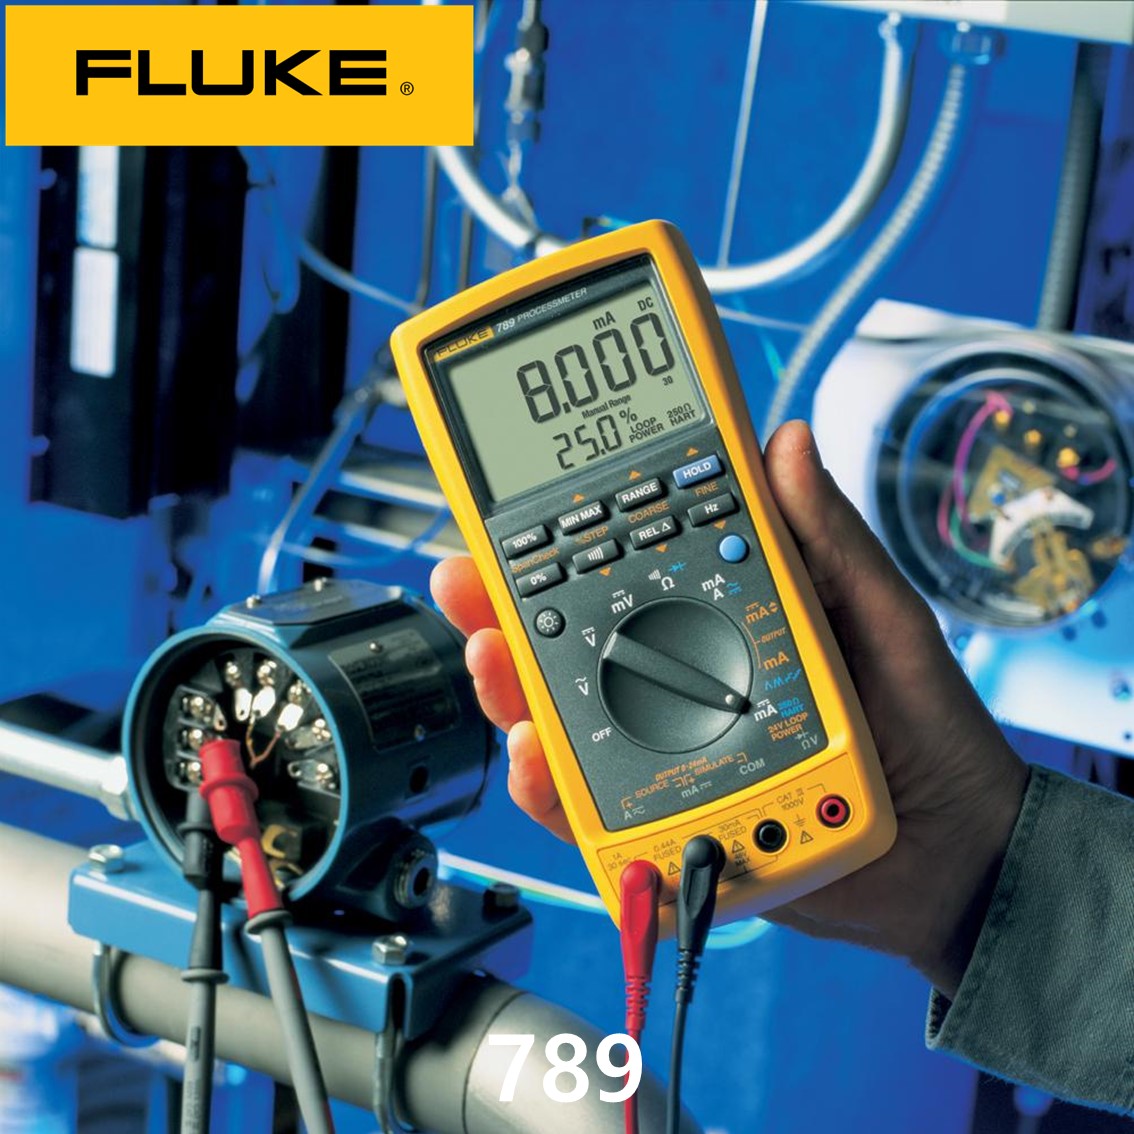 [ FLUKE 789 ] 정품 플루크 루프캘리브레이터, 멀티미터, 테스터기, 멀티메타 789